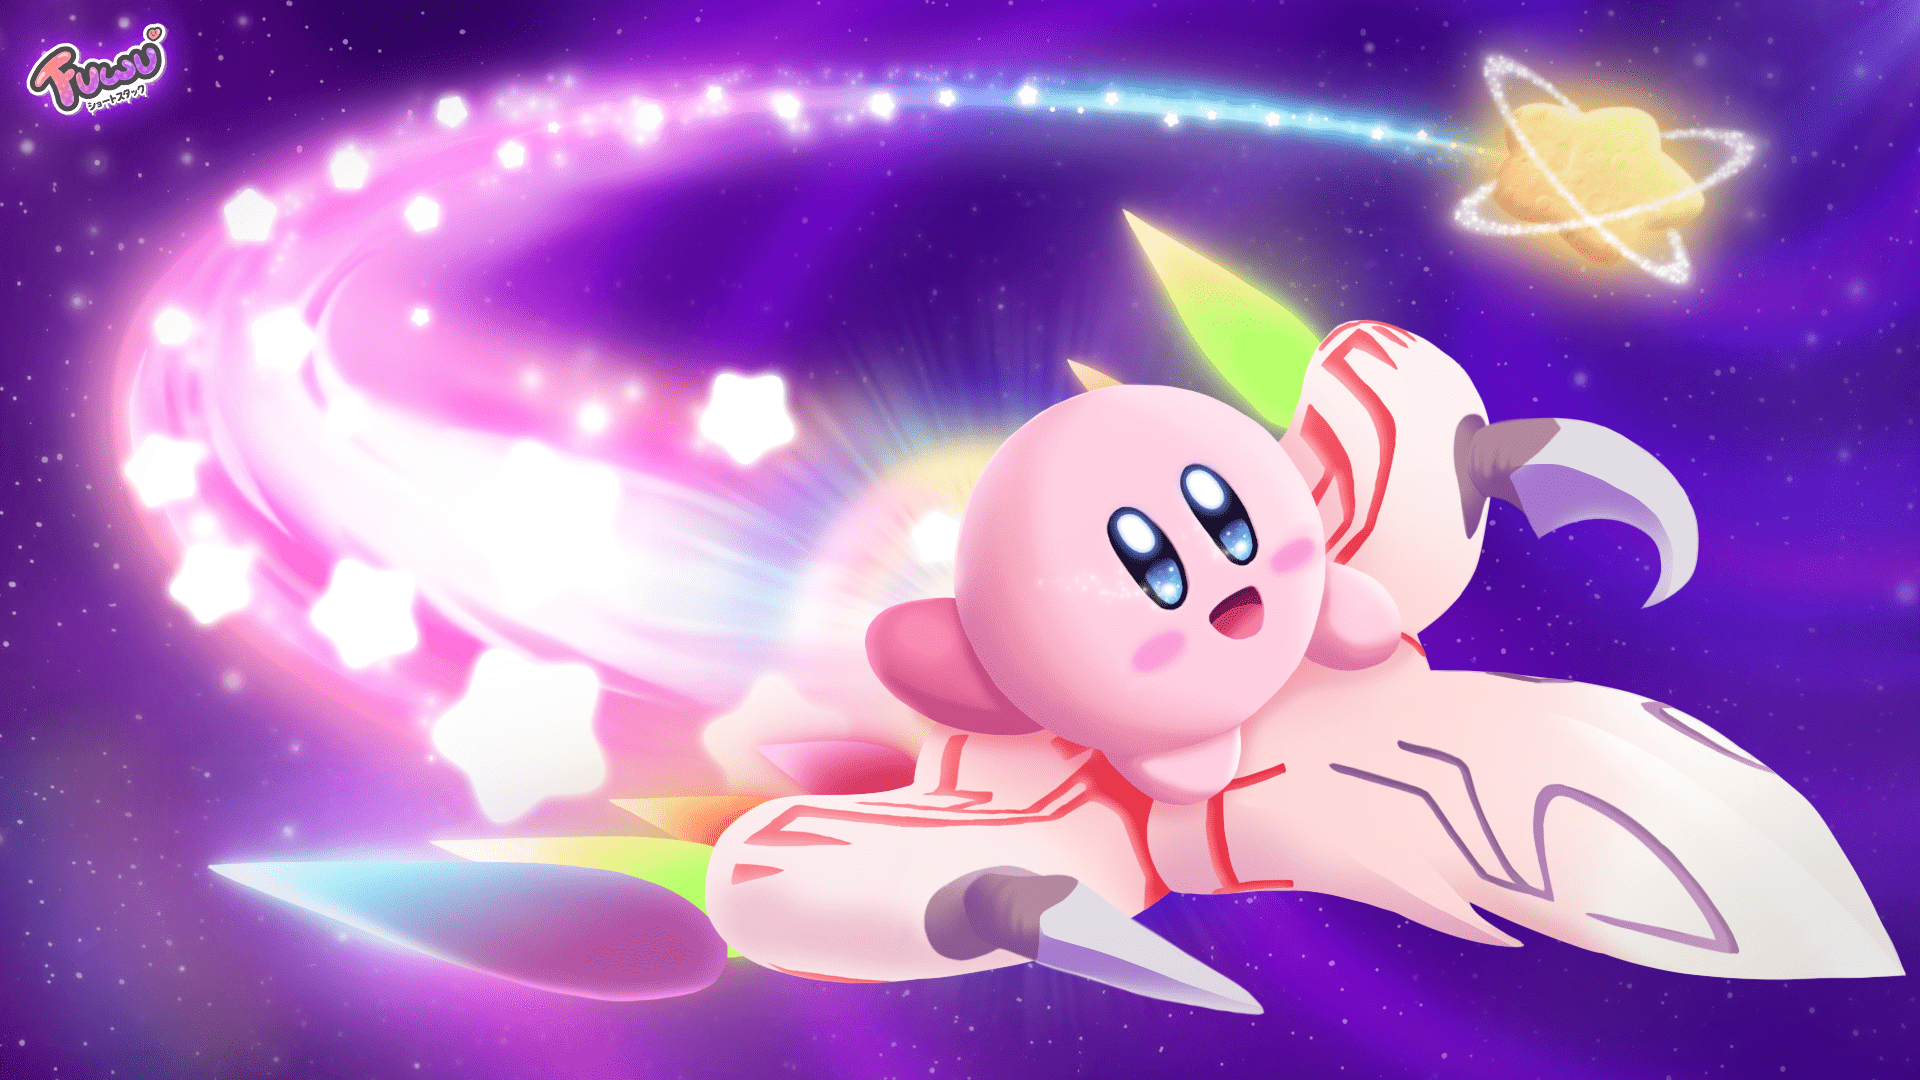 Tải ngay miễn phí hình nền Kirby dễ thương để làm mới màn hình điện thoại hoặc máy tính của bạn. Với những hình ảnh sinh động, bạn sẽ cảm thấy đầy tự hào khi sở hữu một bộ sưu tập hình nền Kirby độc đáo và phong phú.